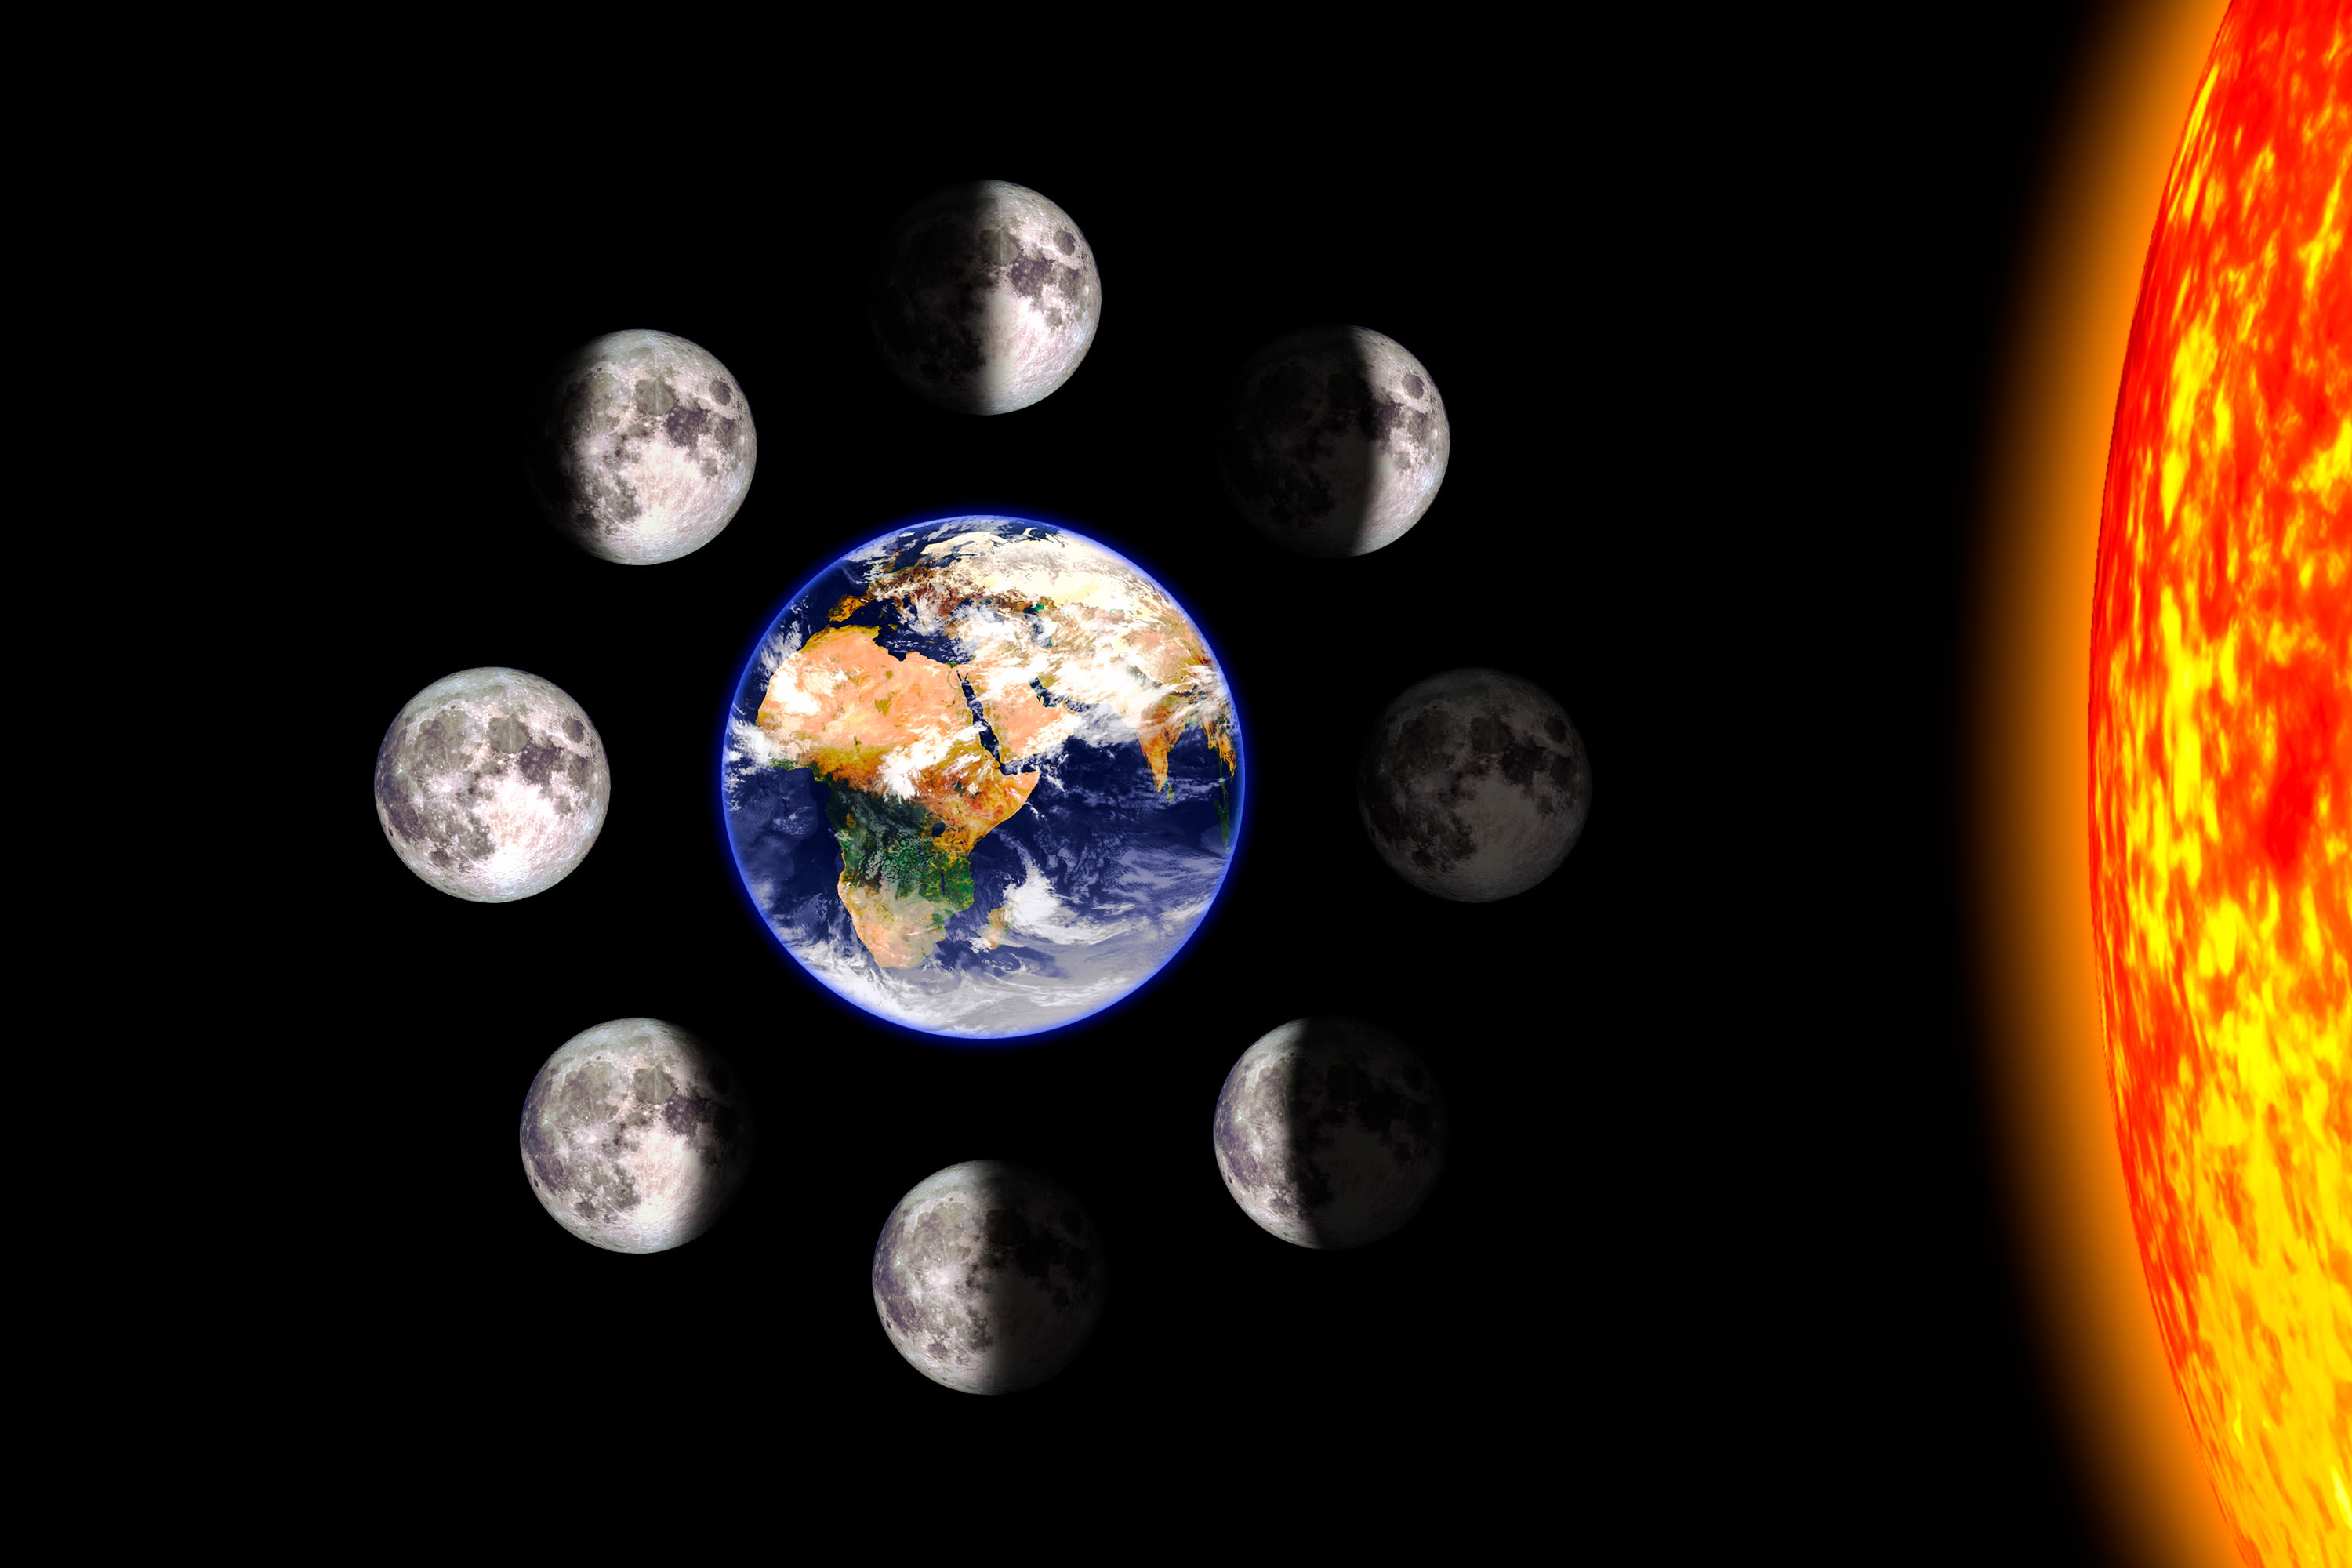 De maanfasen van volle maan tot nieuwe maan en weer terug. Foto: Adobe Stock / Matthieu. 